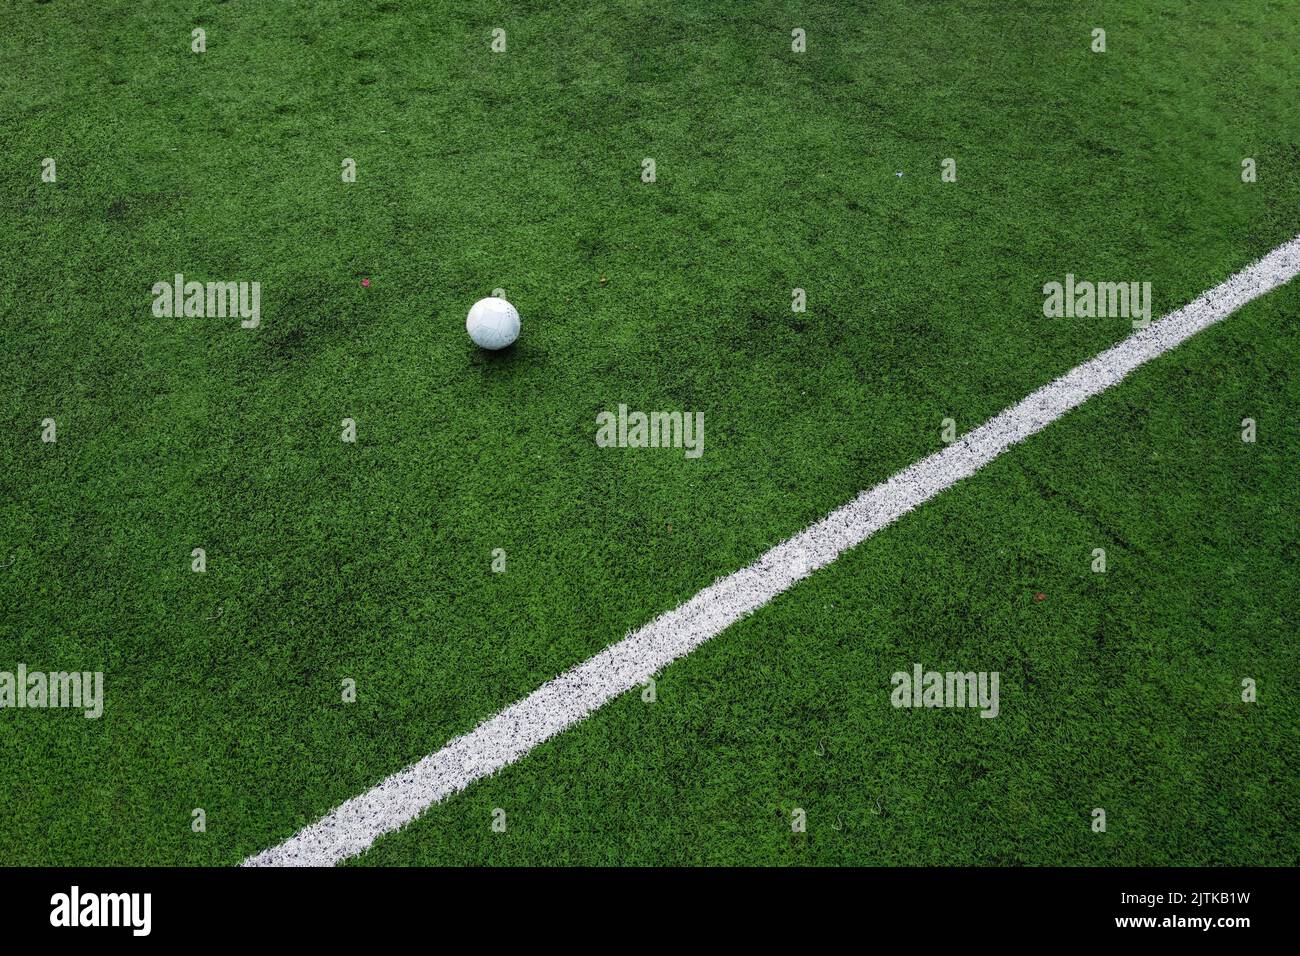 Fußball und eine Linie eines Fußballfeldes Stockfoto